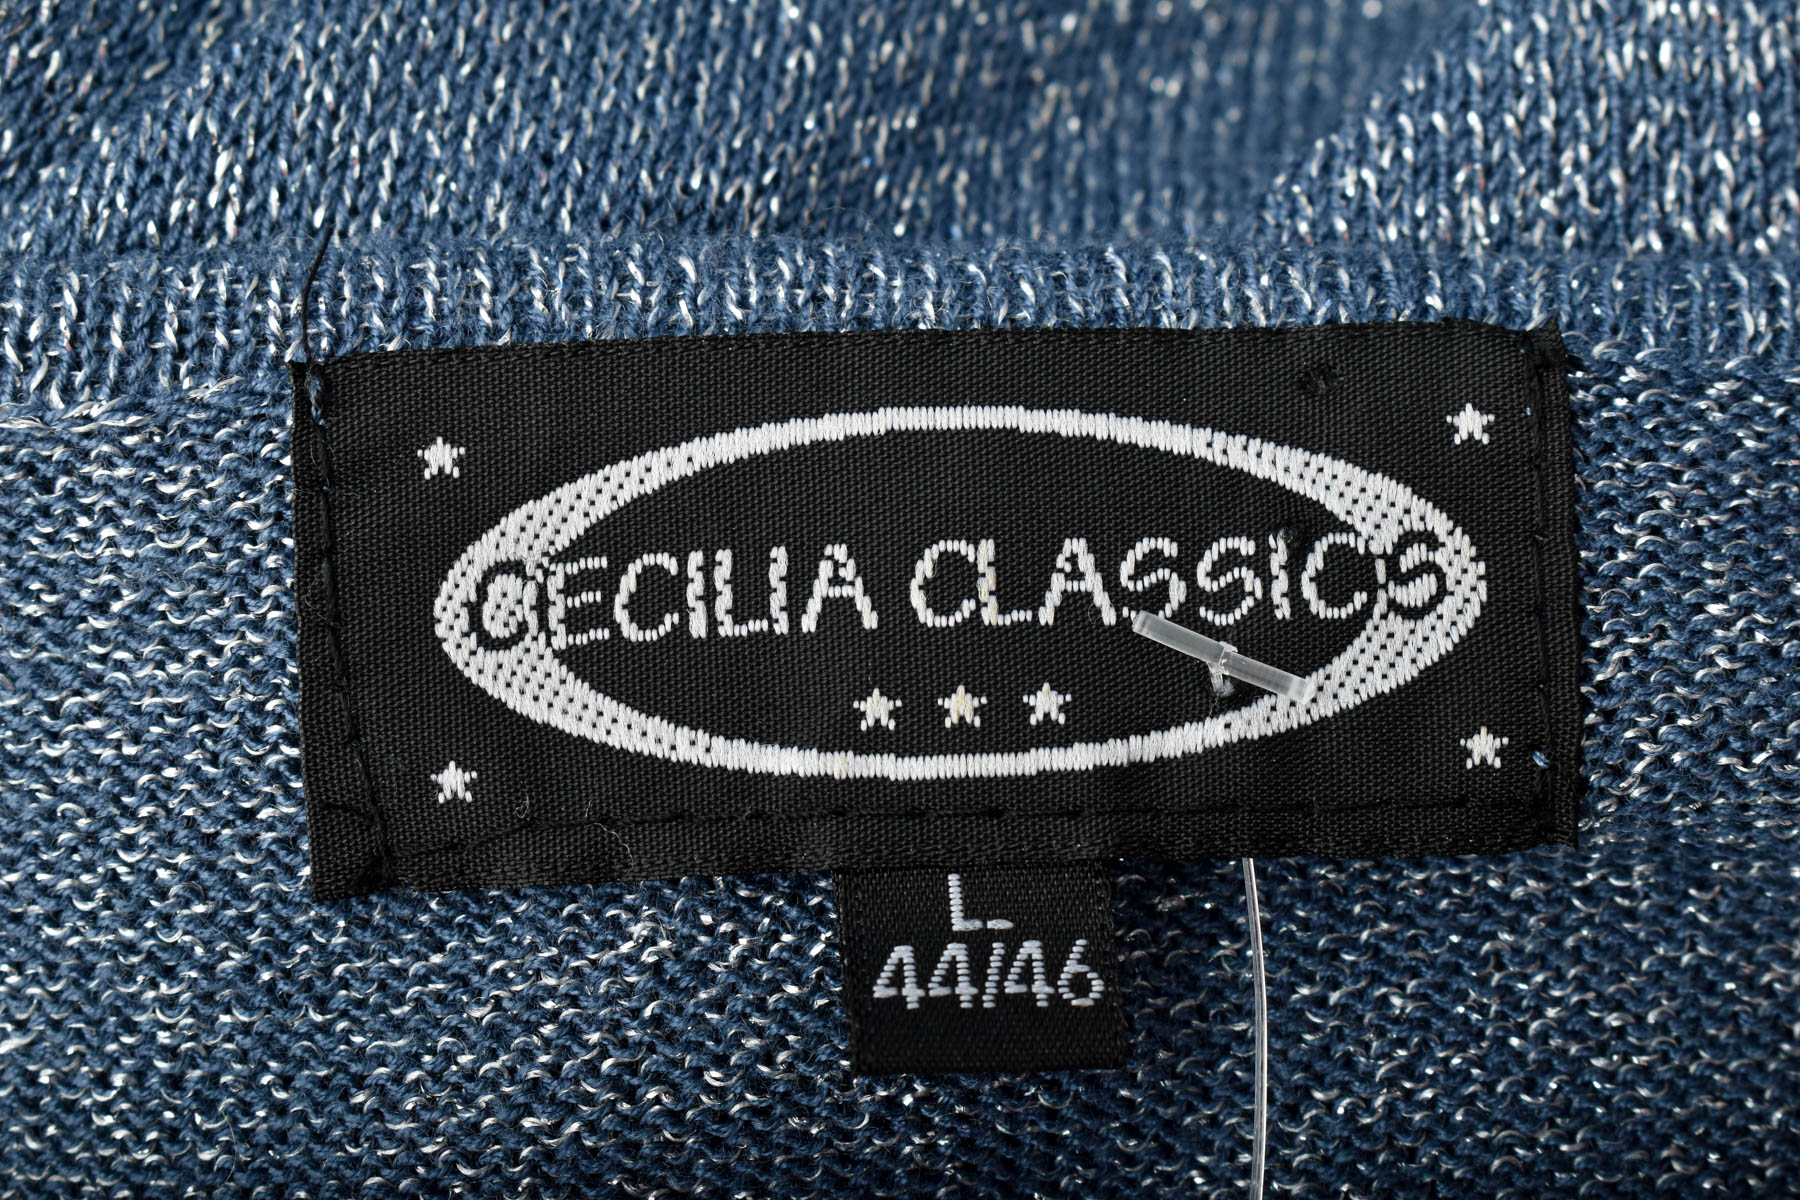 Women's sweater - Cecilia Classics - 2